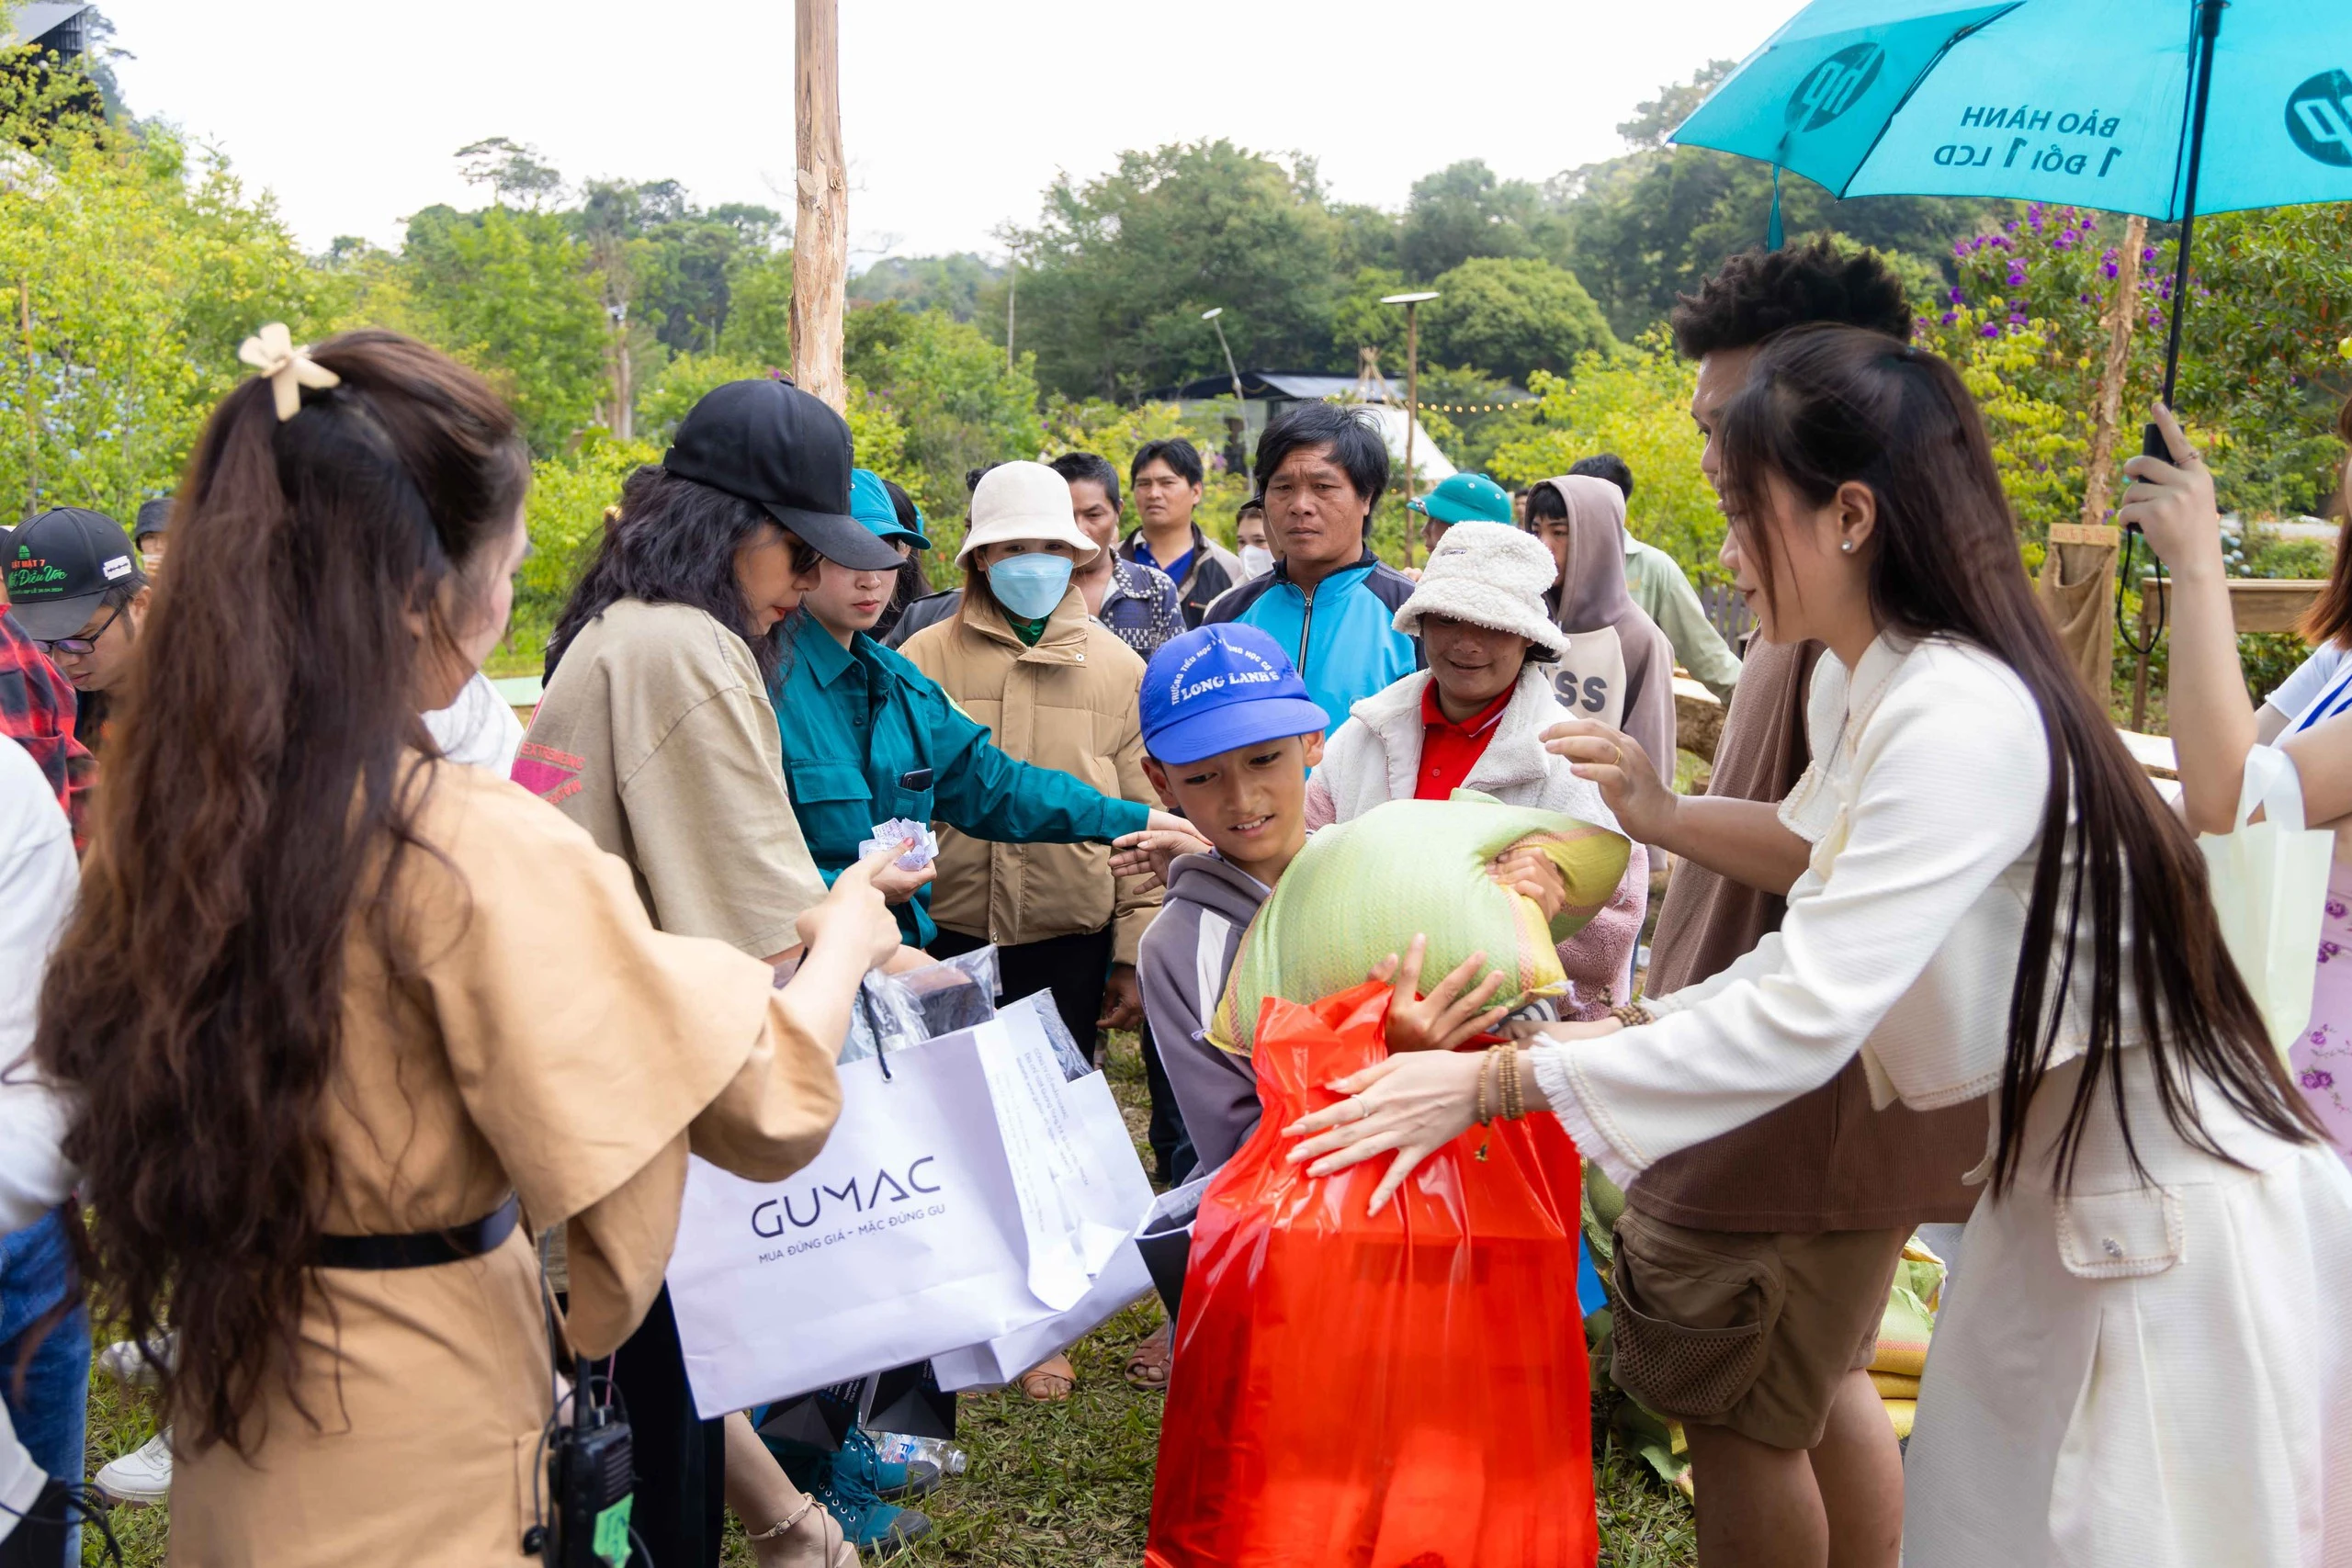 Lý Hải tặng quà cho bà con nghèo tại phim trường 'Lật mặt 7' ở Lâm Đồng